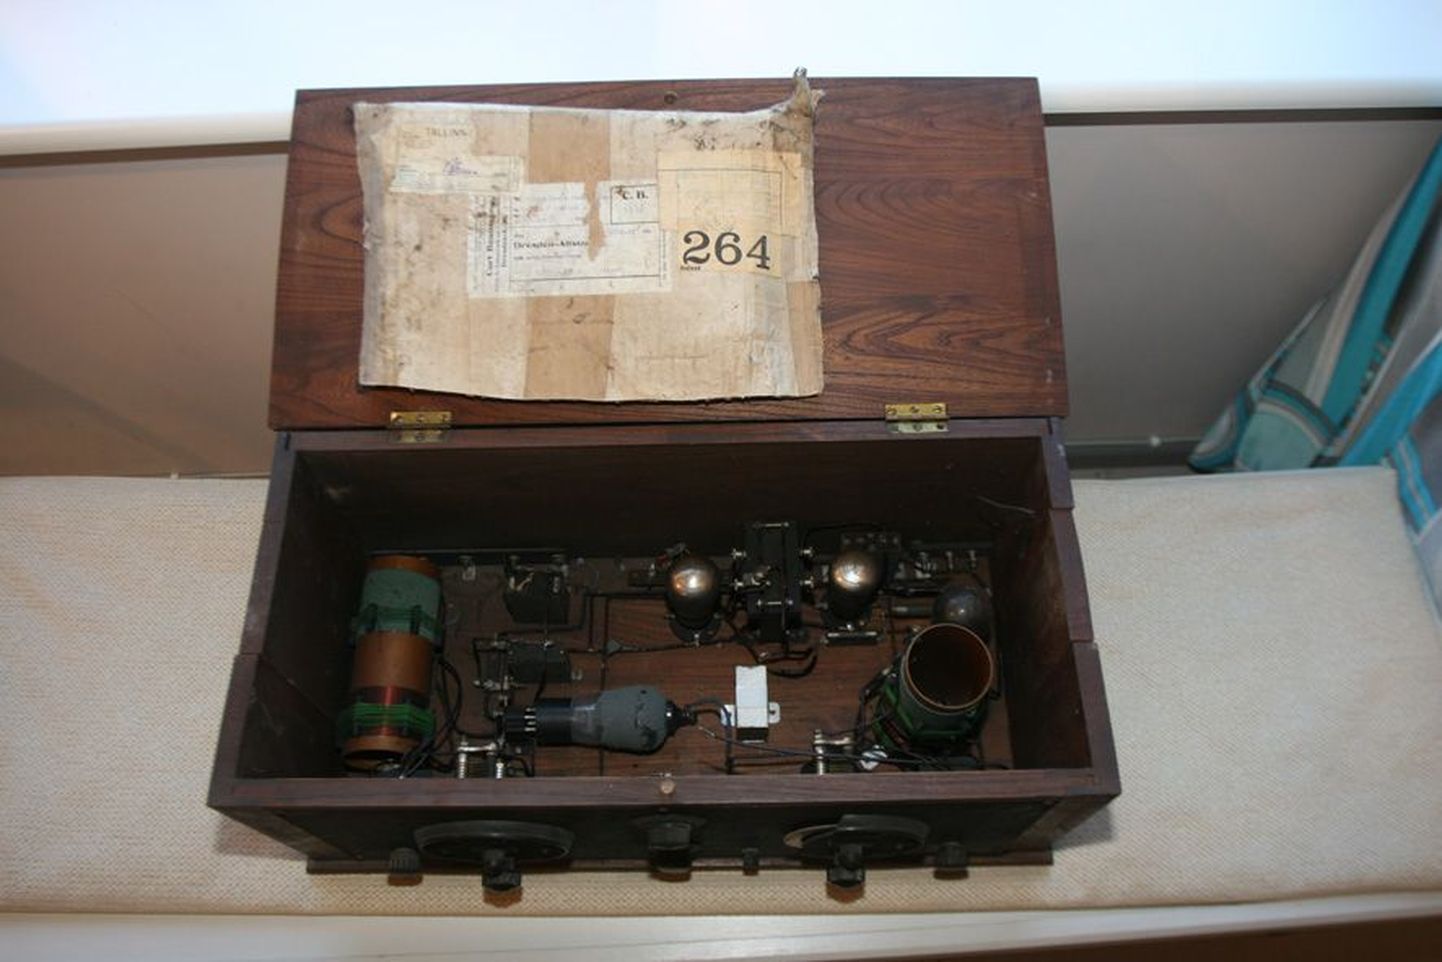 1920ndatest pärit raadio oli peidetud pappkasti, millel olev daatum kandis aastanumbrit 1944. Raadio käib pealt lahti, mis on tolleaegsetele mudelitele iseloomulik.